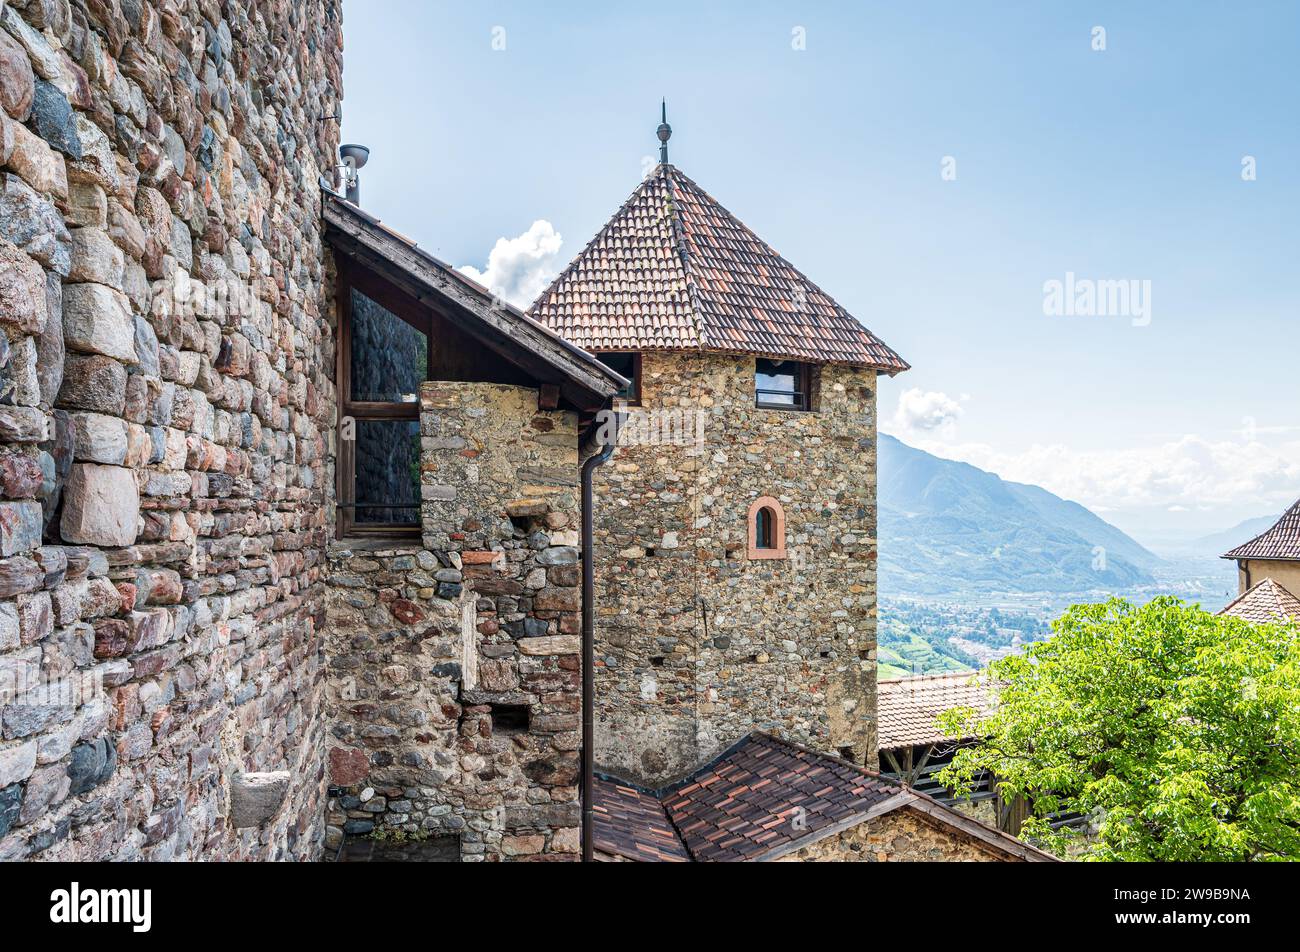 Castello Tirolo in alto Adige. Il Castello ospita il Museo della Cultura dell'alto Adige, Trentino alto Adige, Italia settentrionale, Europa Foto Stock